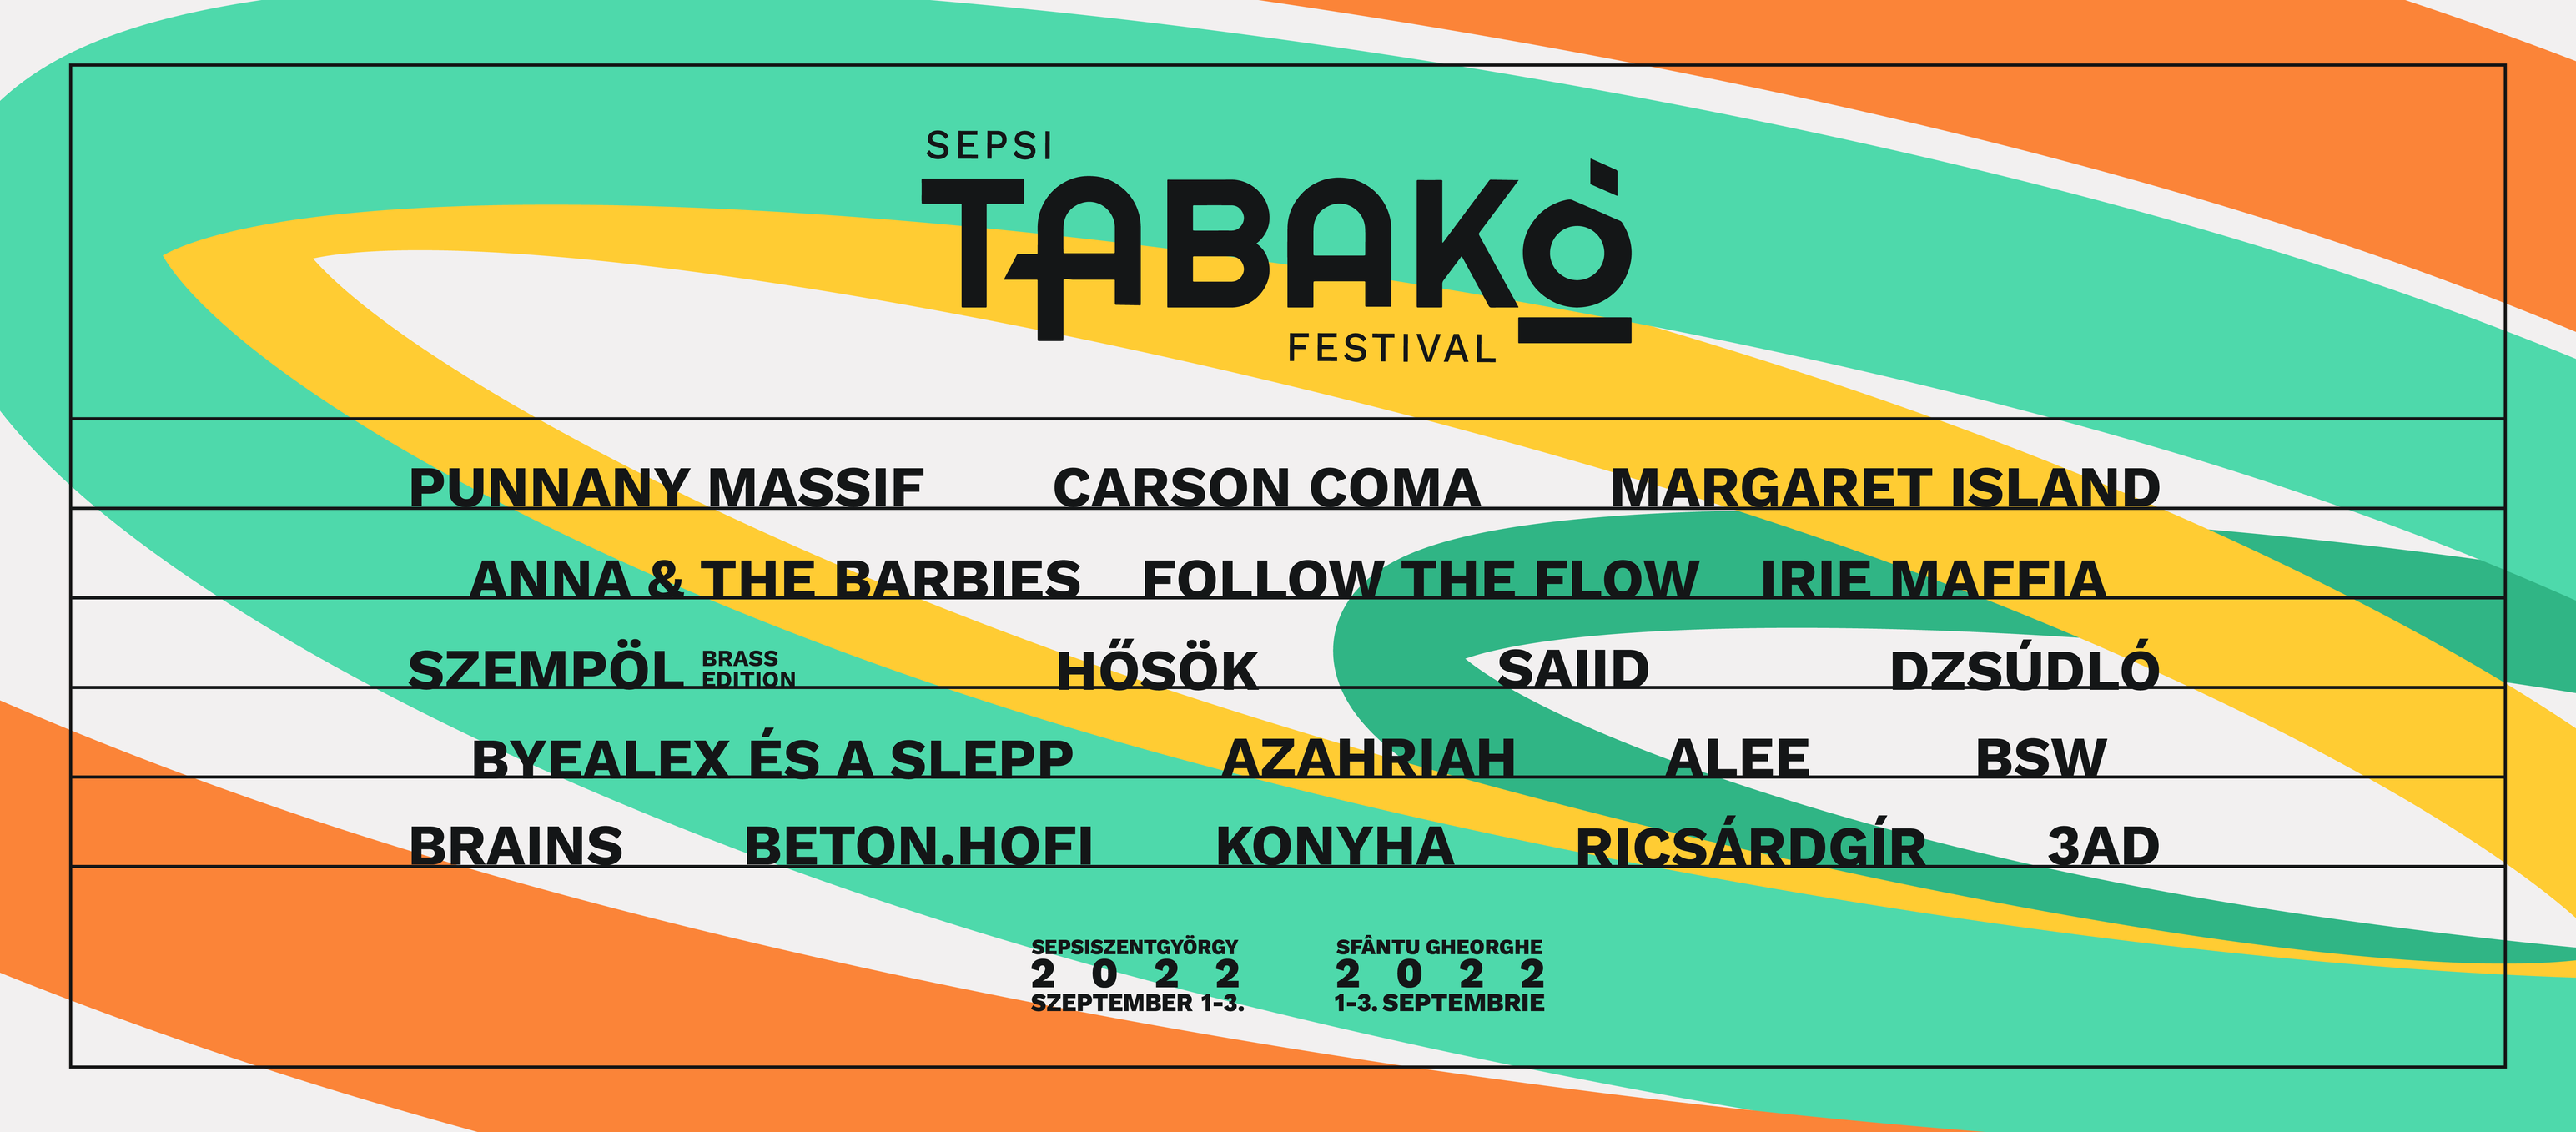 Sepsi Tabakó Festival